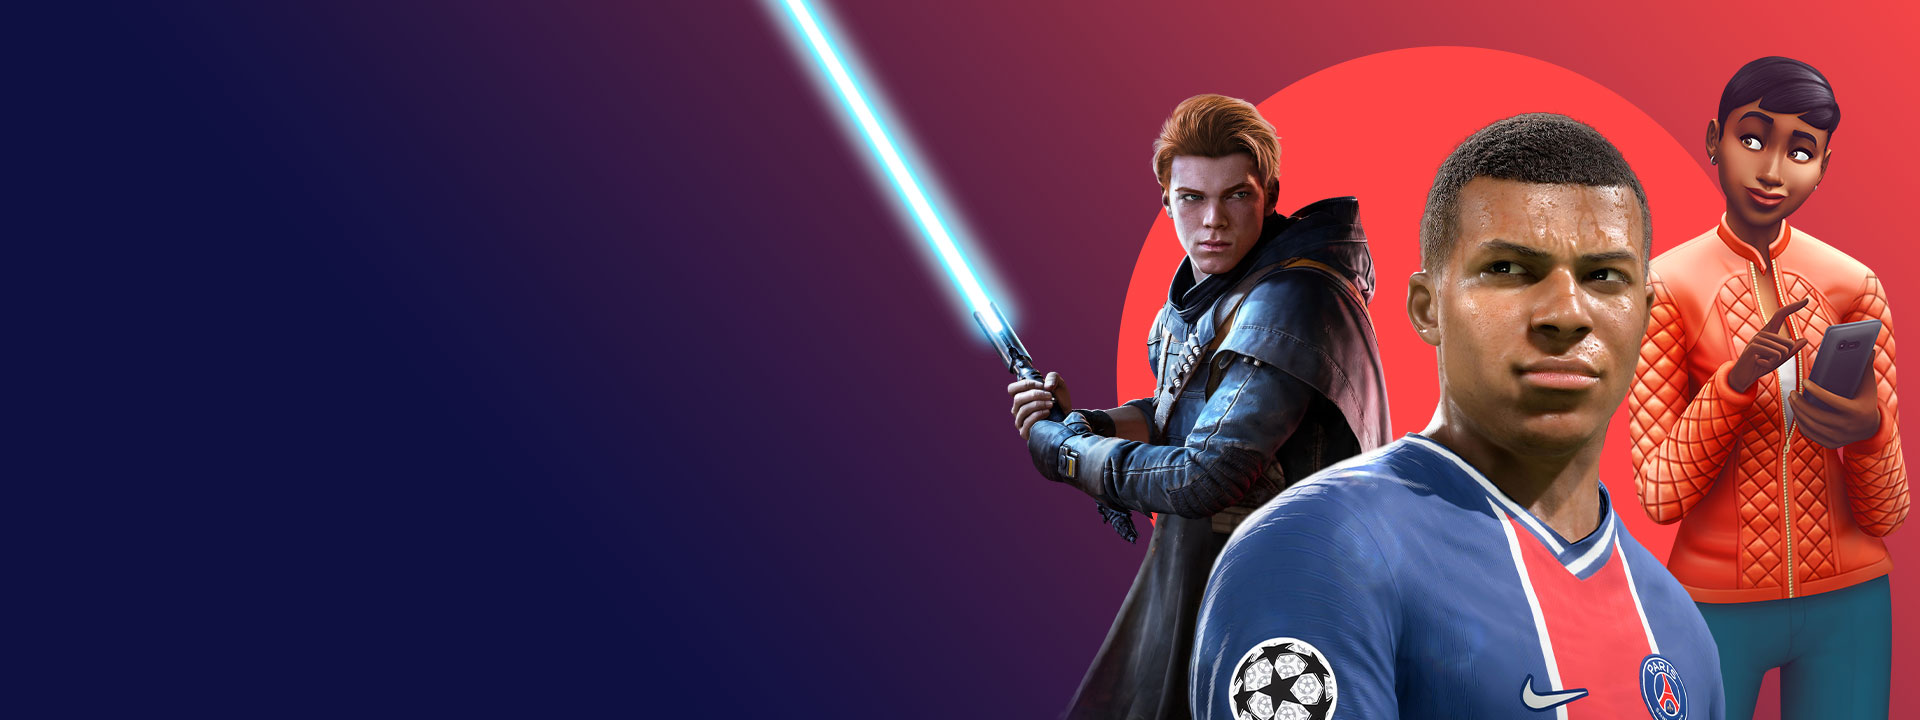 Arte dos jogos da EA incluídos no Xbox Game Pass, incluindo o Star Wars Jedi: Fallen Order, o FIFA 22 e o The Sims 4.